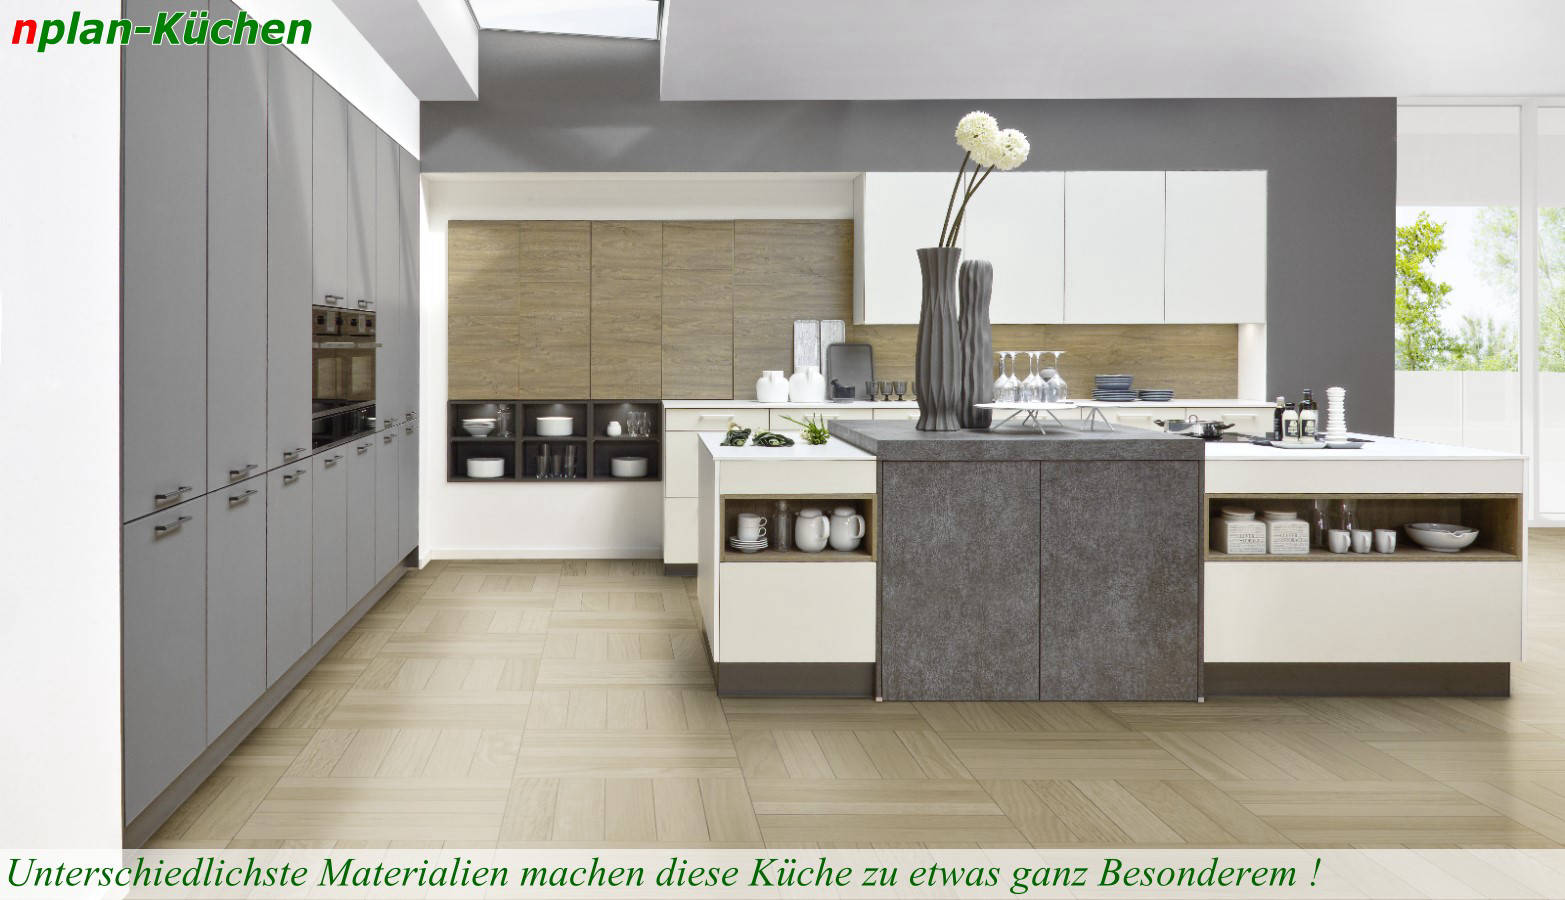 Küchenlinie Brillana - Offene Wohnküche mit unterschiedlichsten Materialien in kontrastreichen erdigen Tönen